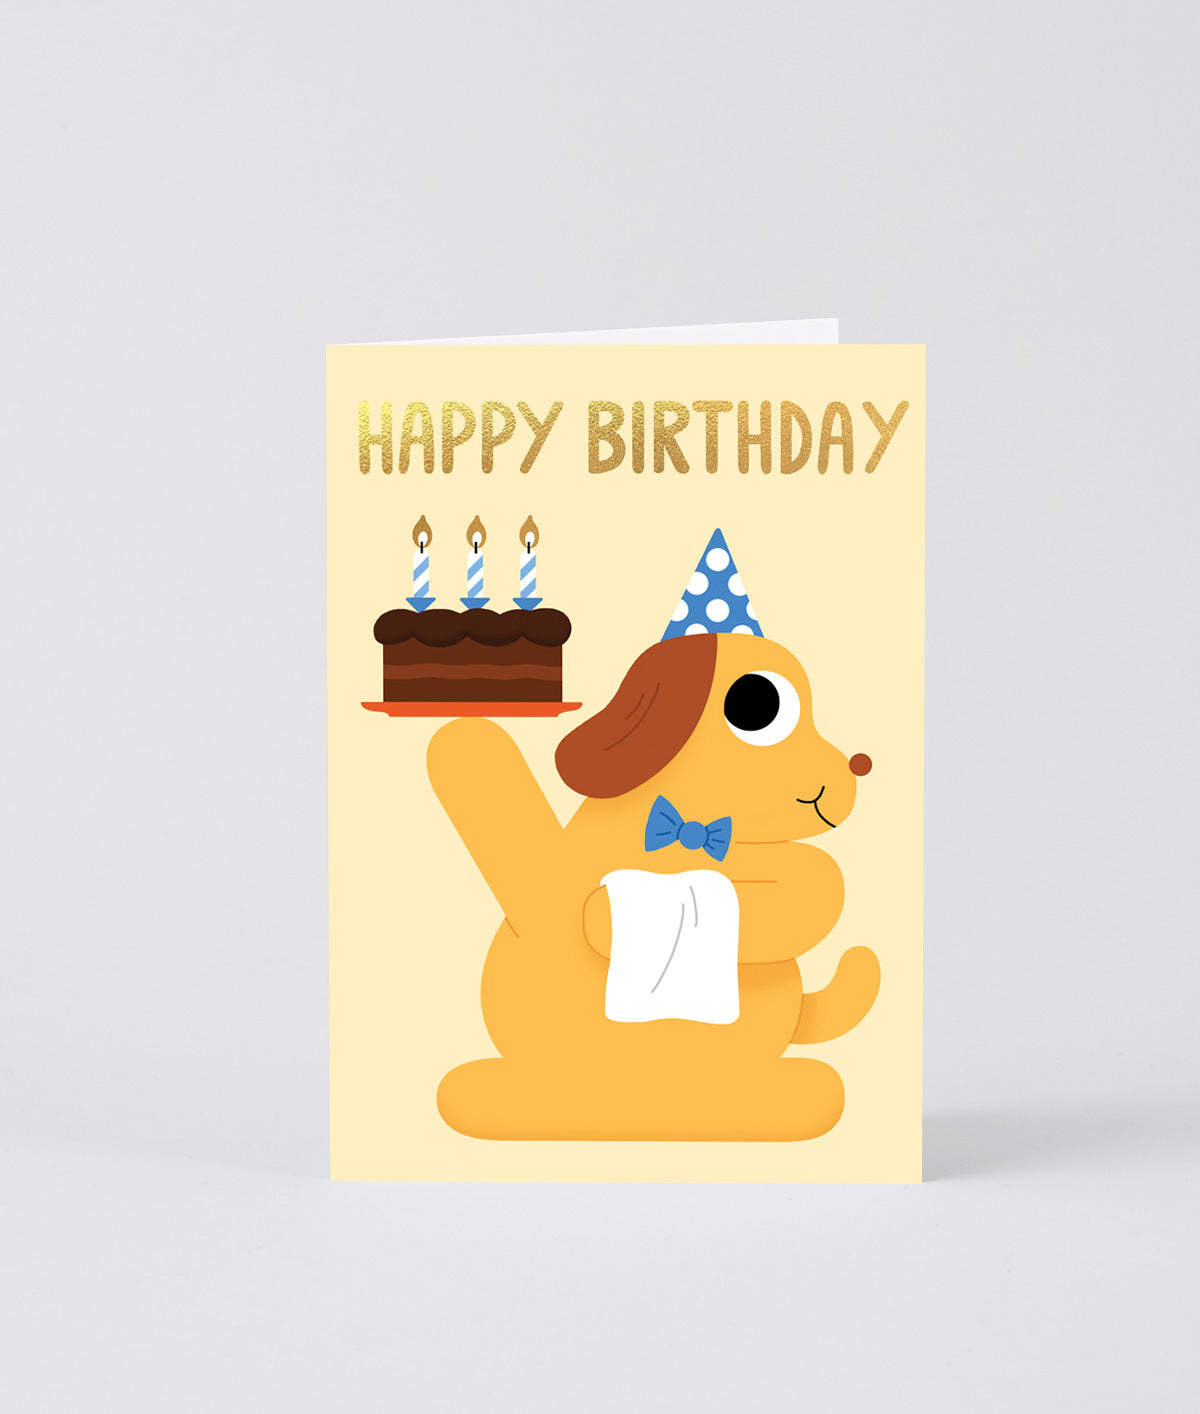 Happy Birthday Cake & Dog